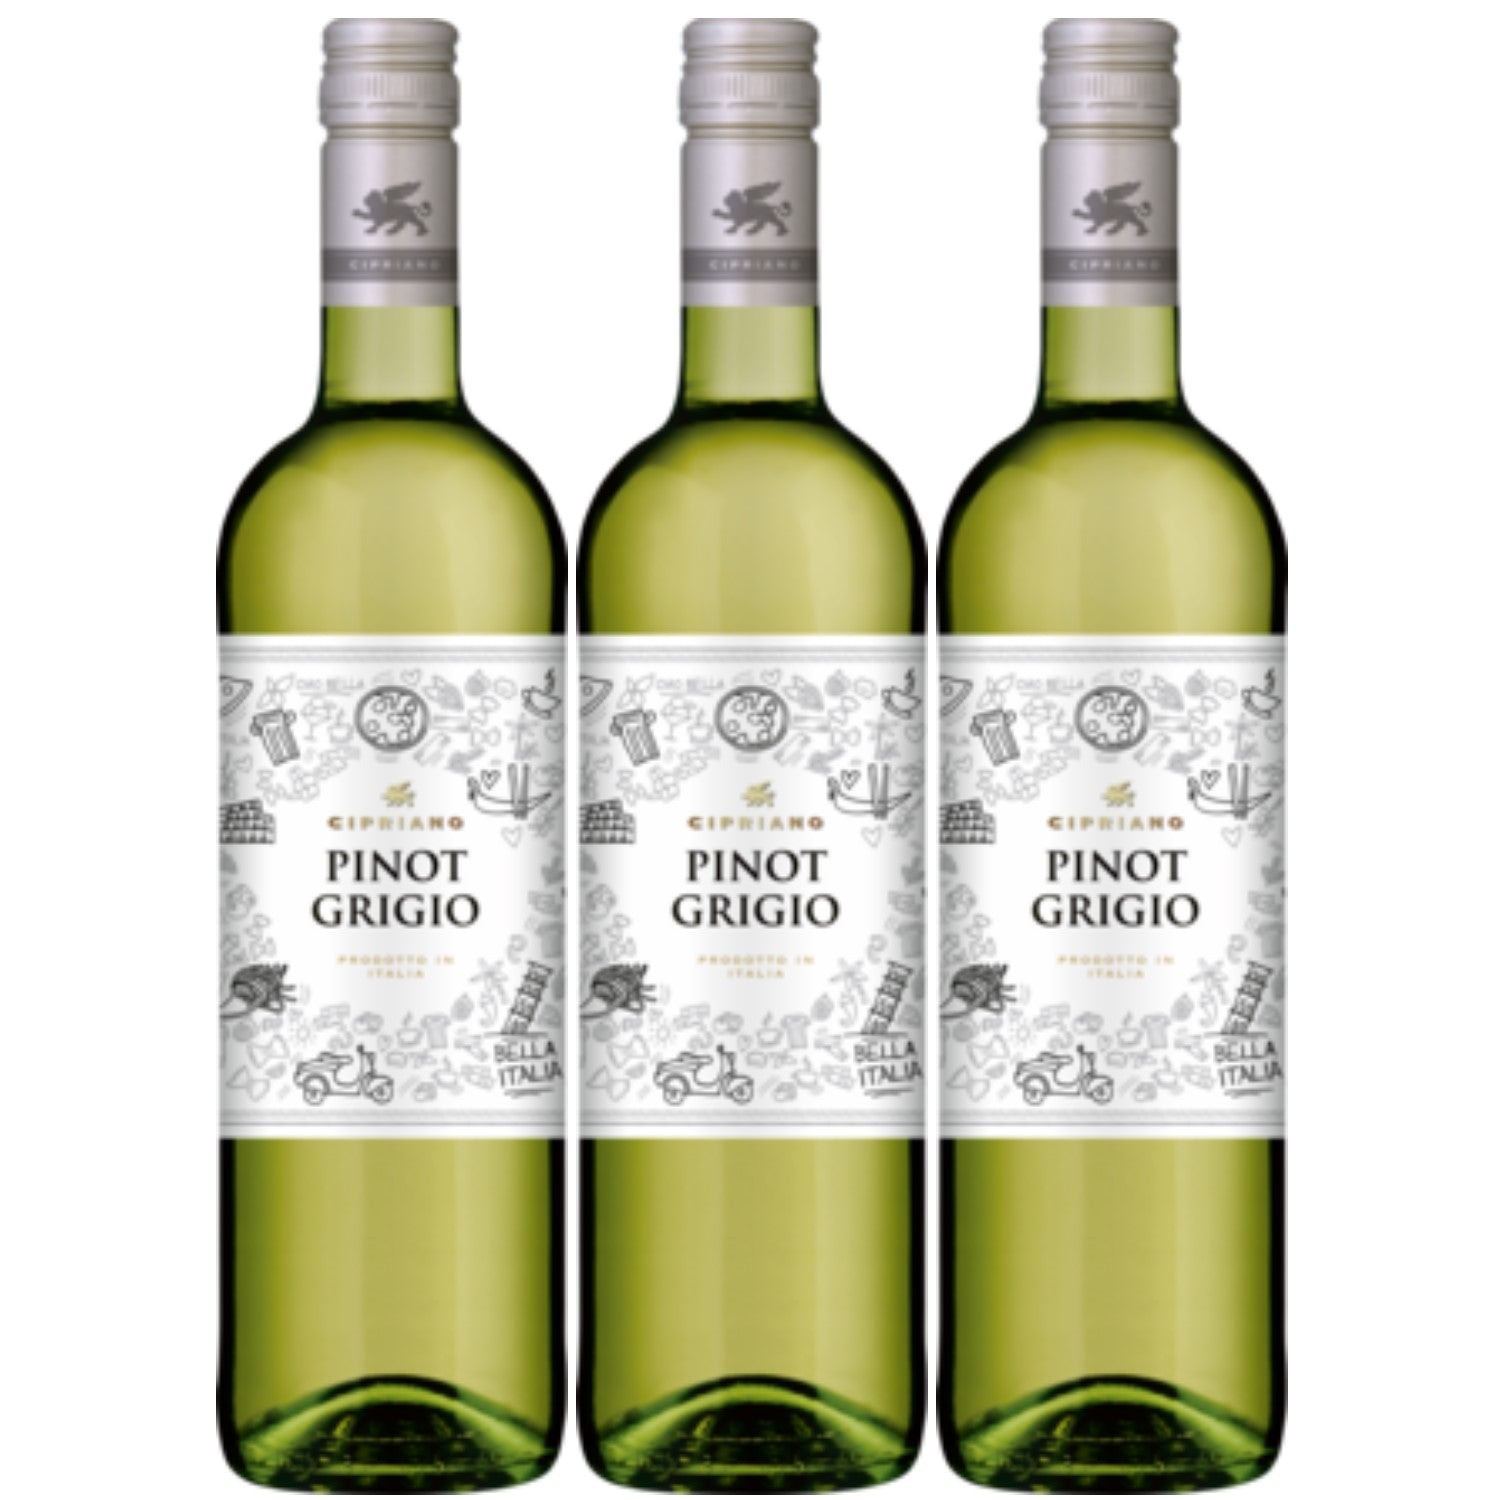 Cipriano Pinot Grigio Venezie Weißwein italienischer Wein trocken DOC Italien (3 x 1.0l) - Versanel -